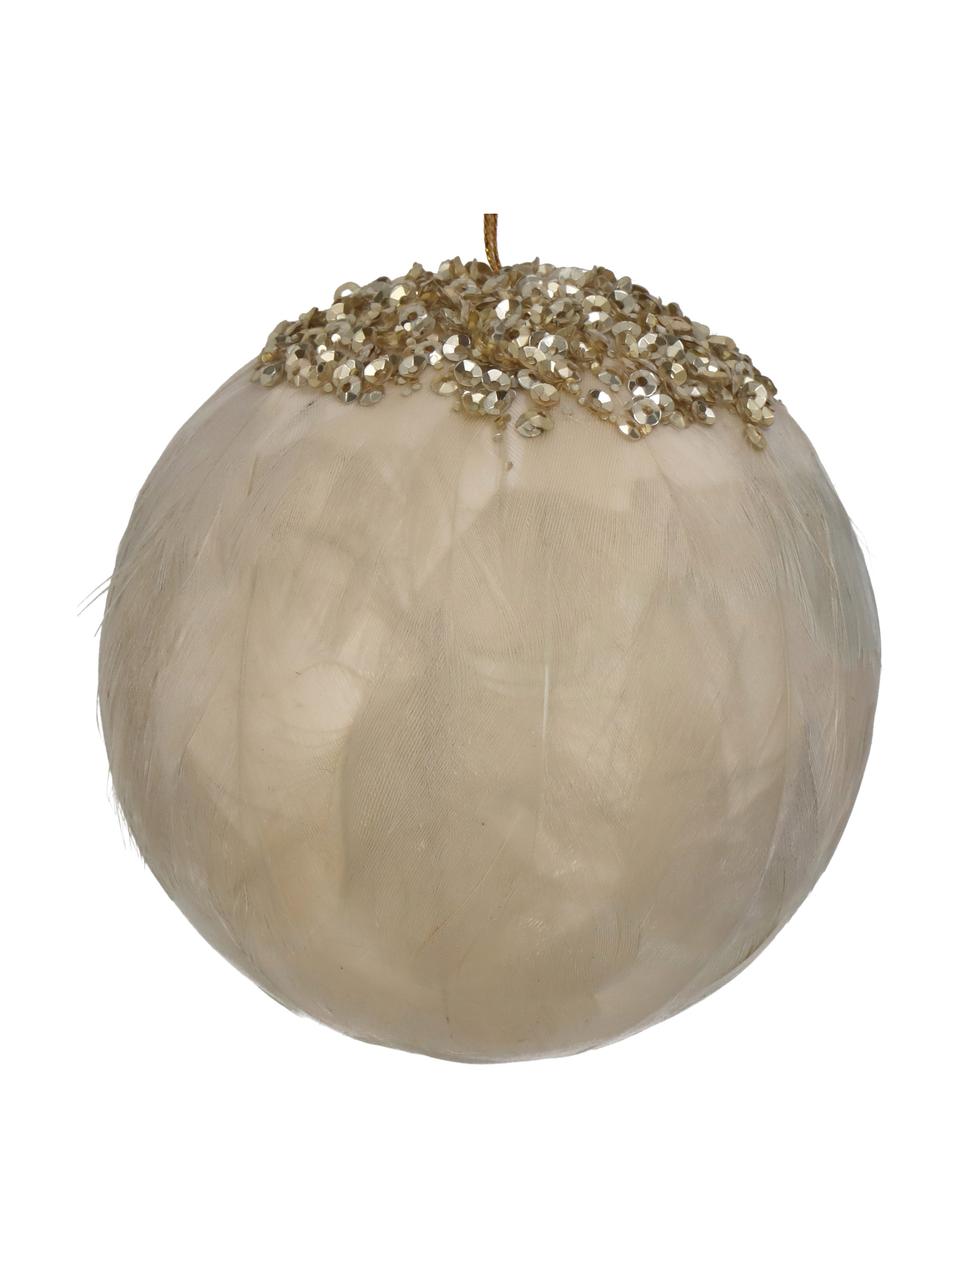 Ozdoby na stromeček Feather Ball, 2 ks, Peří, Béžová, zlatá, Ø 8 cm